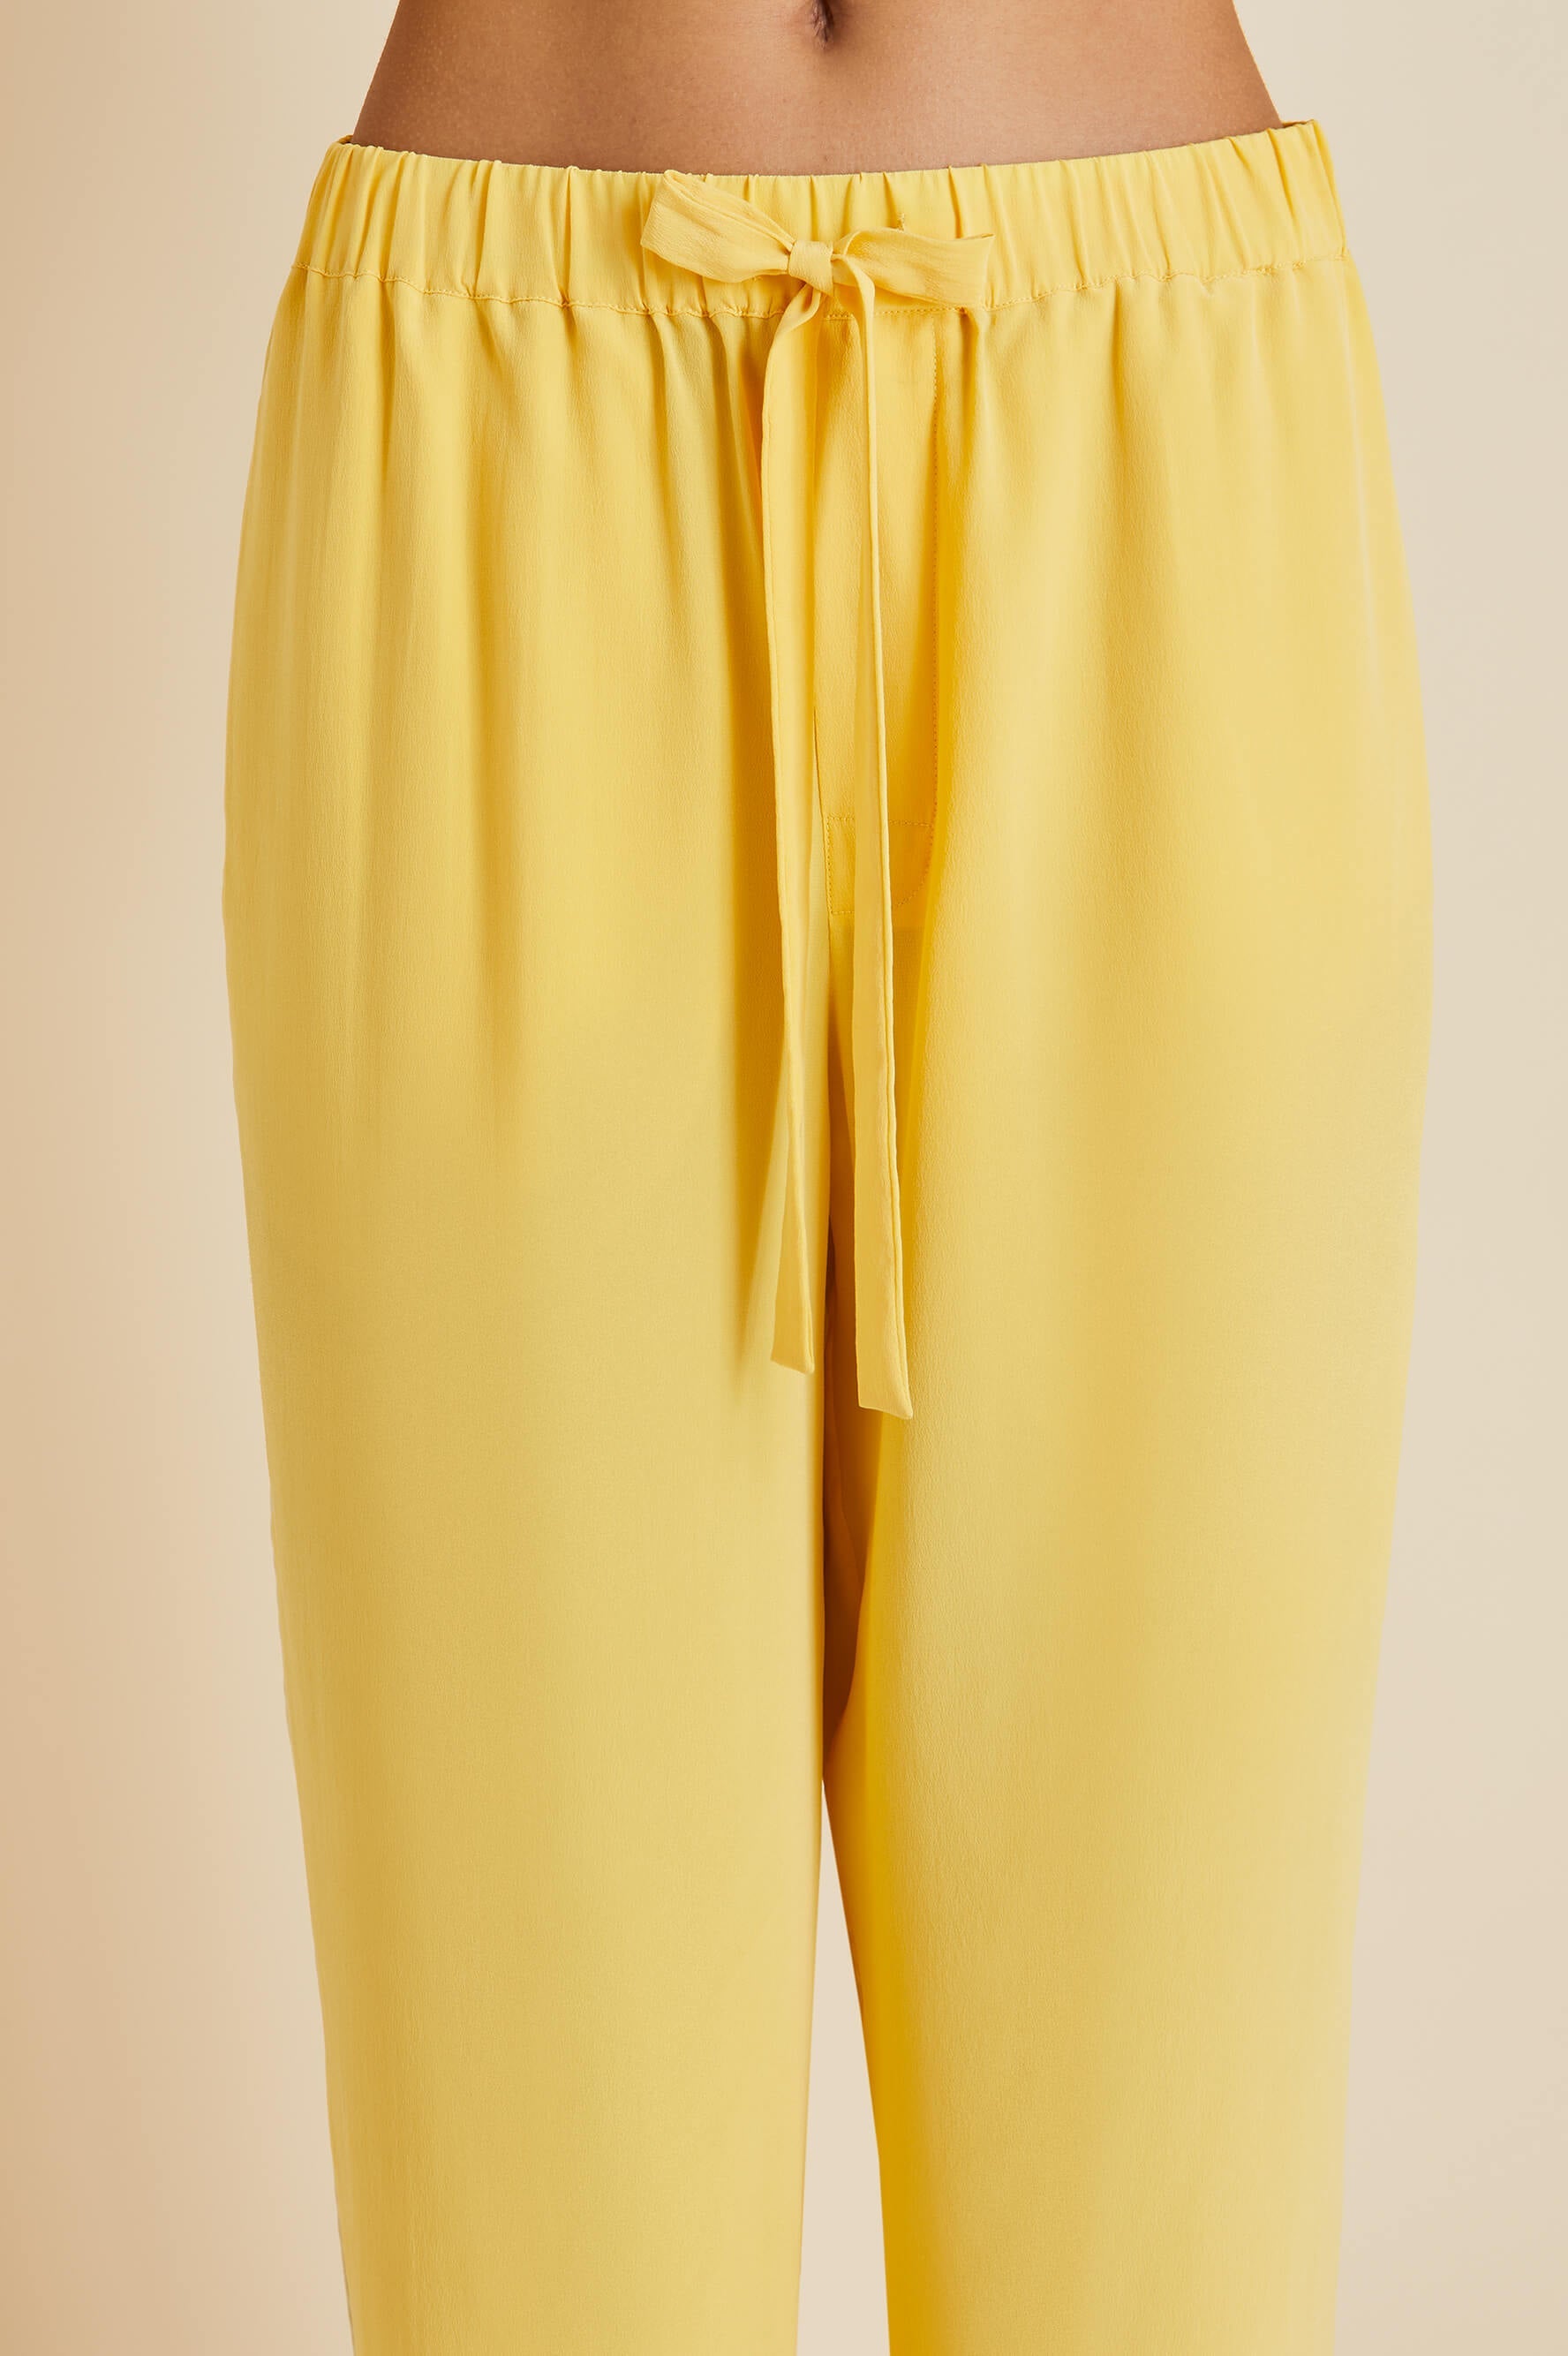 Yves Yellow Pyjamas in Silk Crêpe de Chine